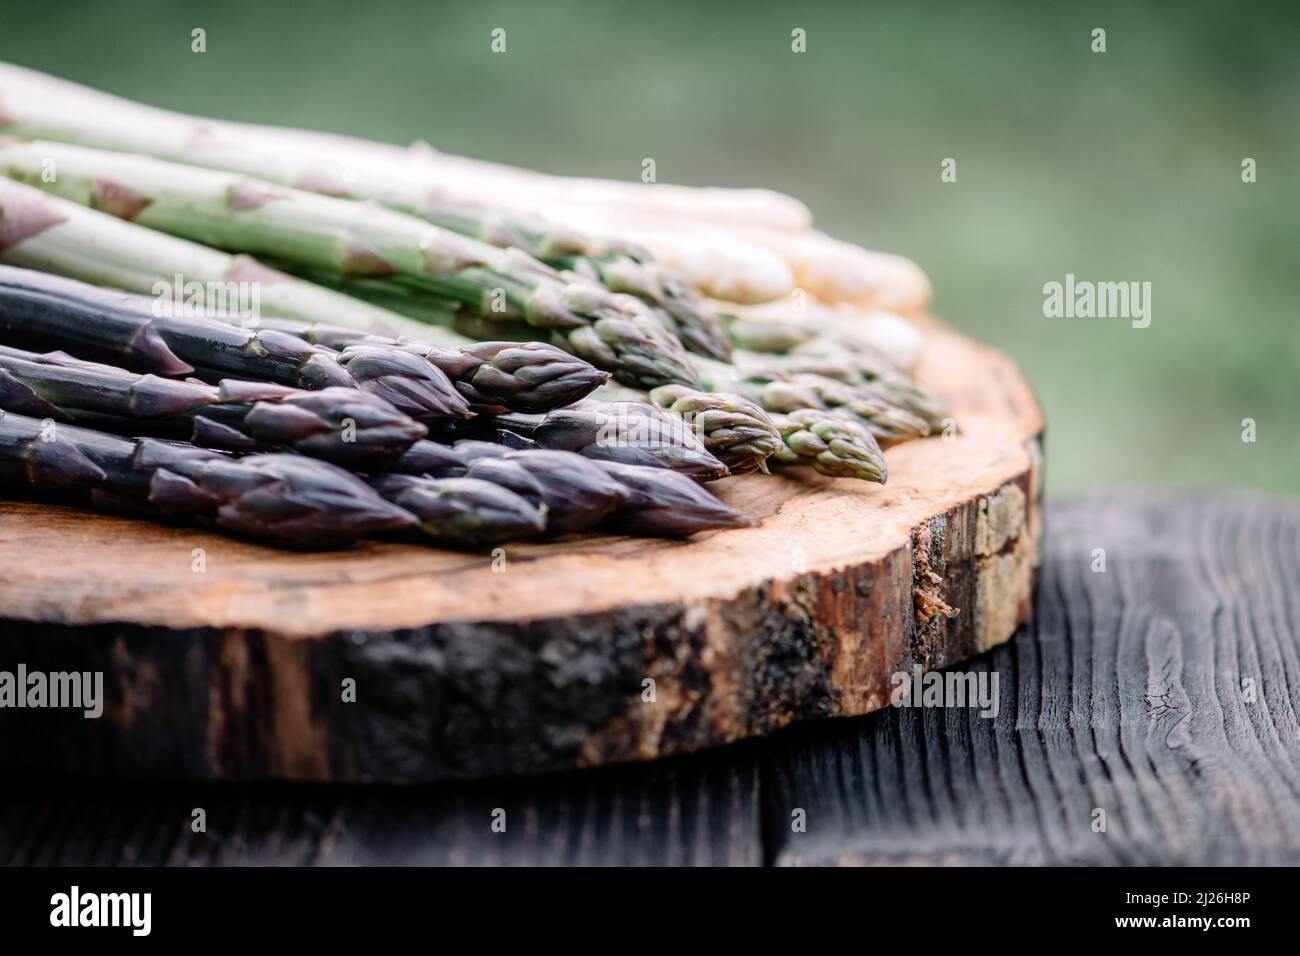 Grüner, violetter und weißer Spargel sprießt auf Holzbrett aus der Nähe. Draufsicht flach liegend. Food-Fotografie Stockfoto